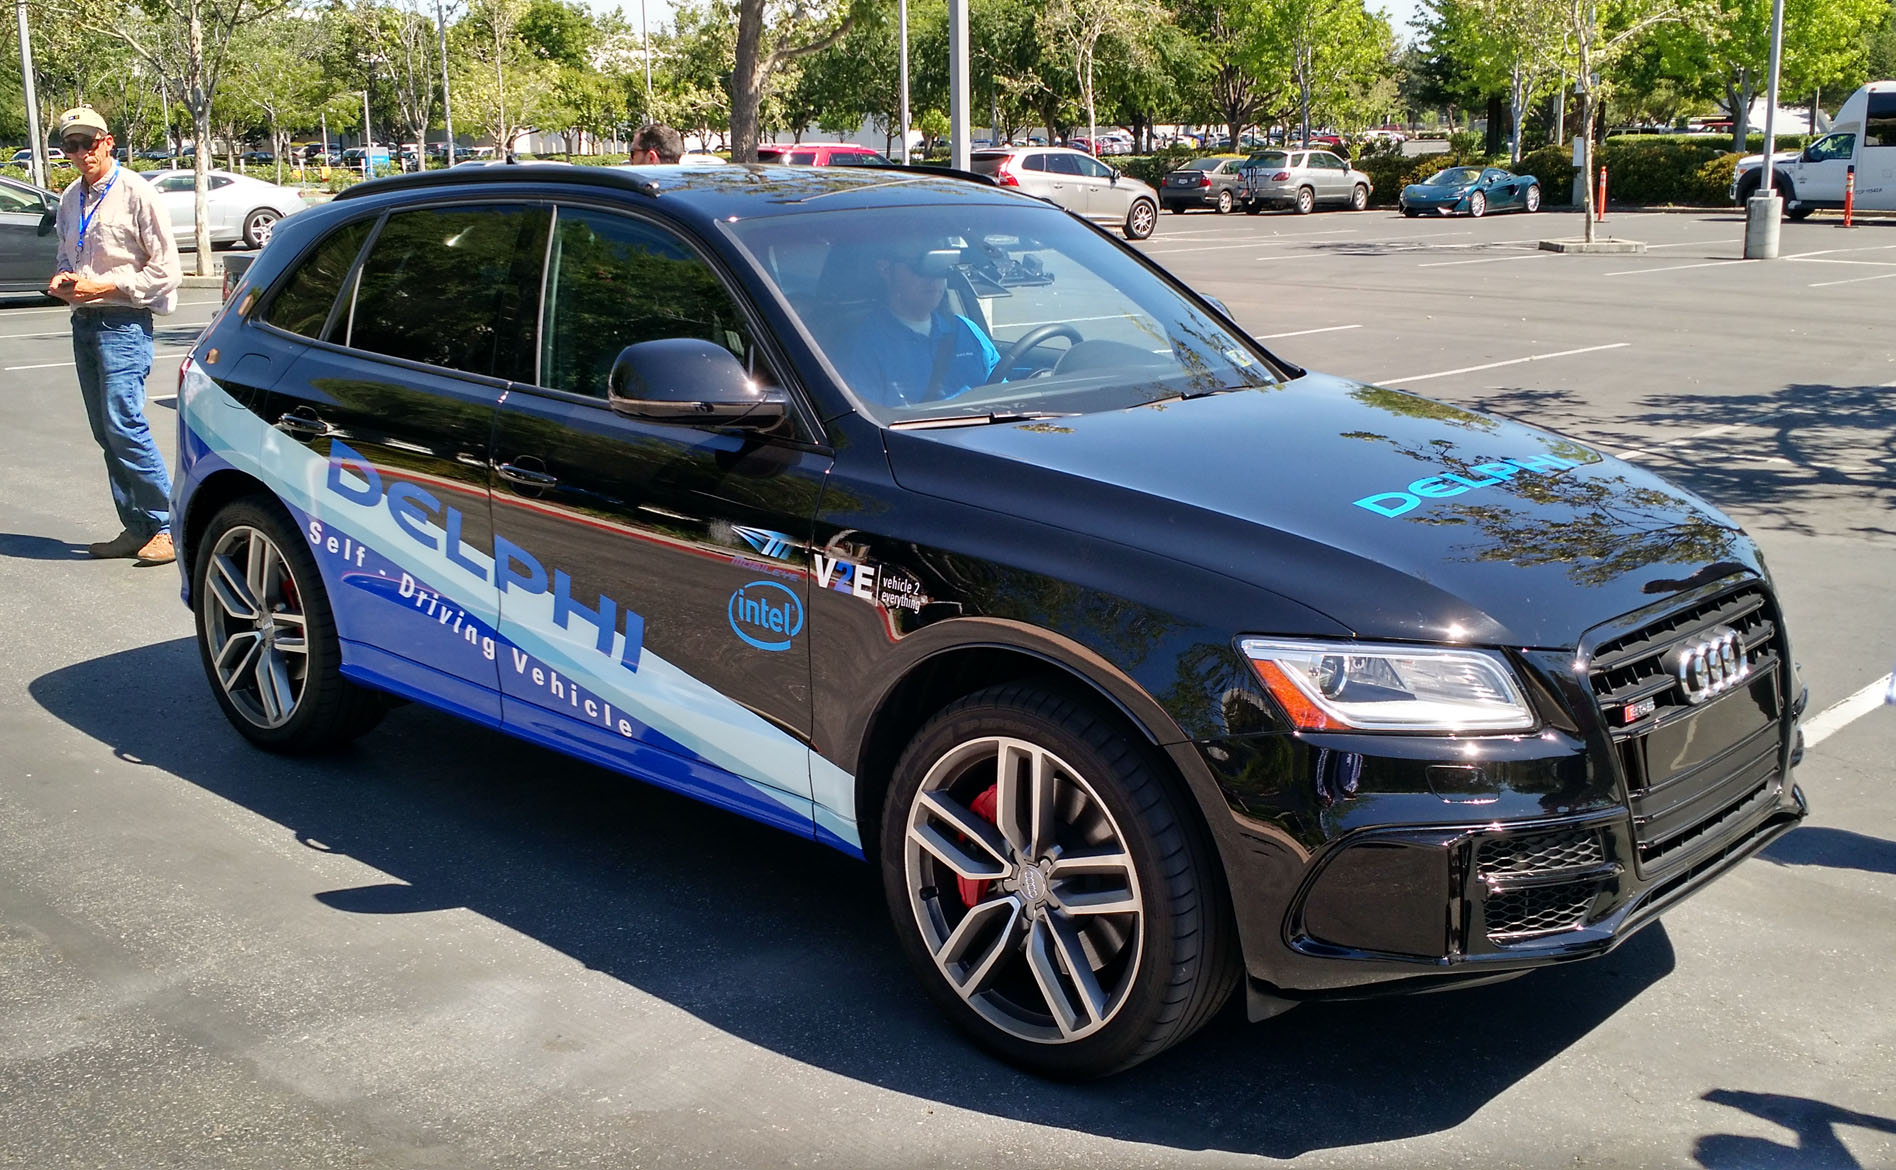 Delphi’s autonomous Audi test car